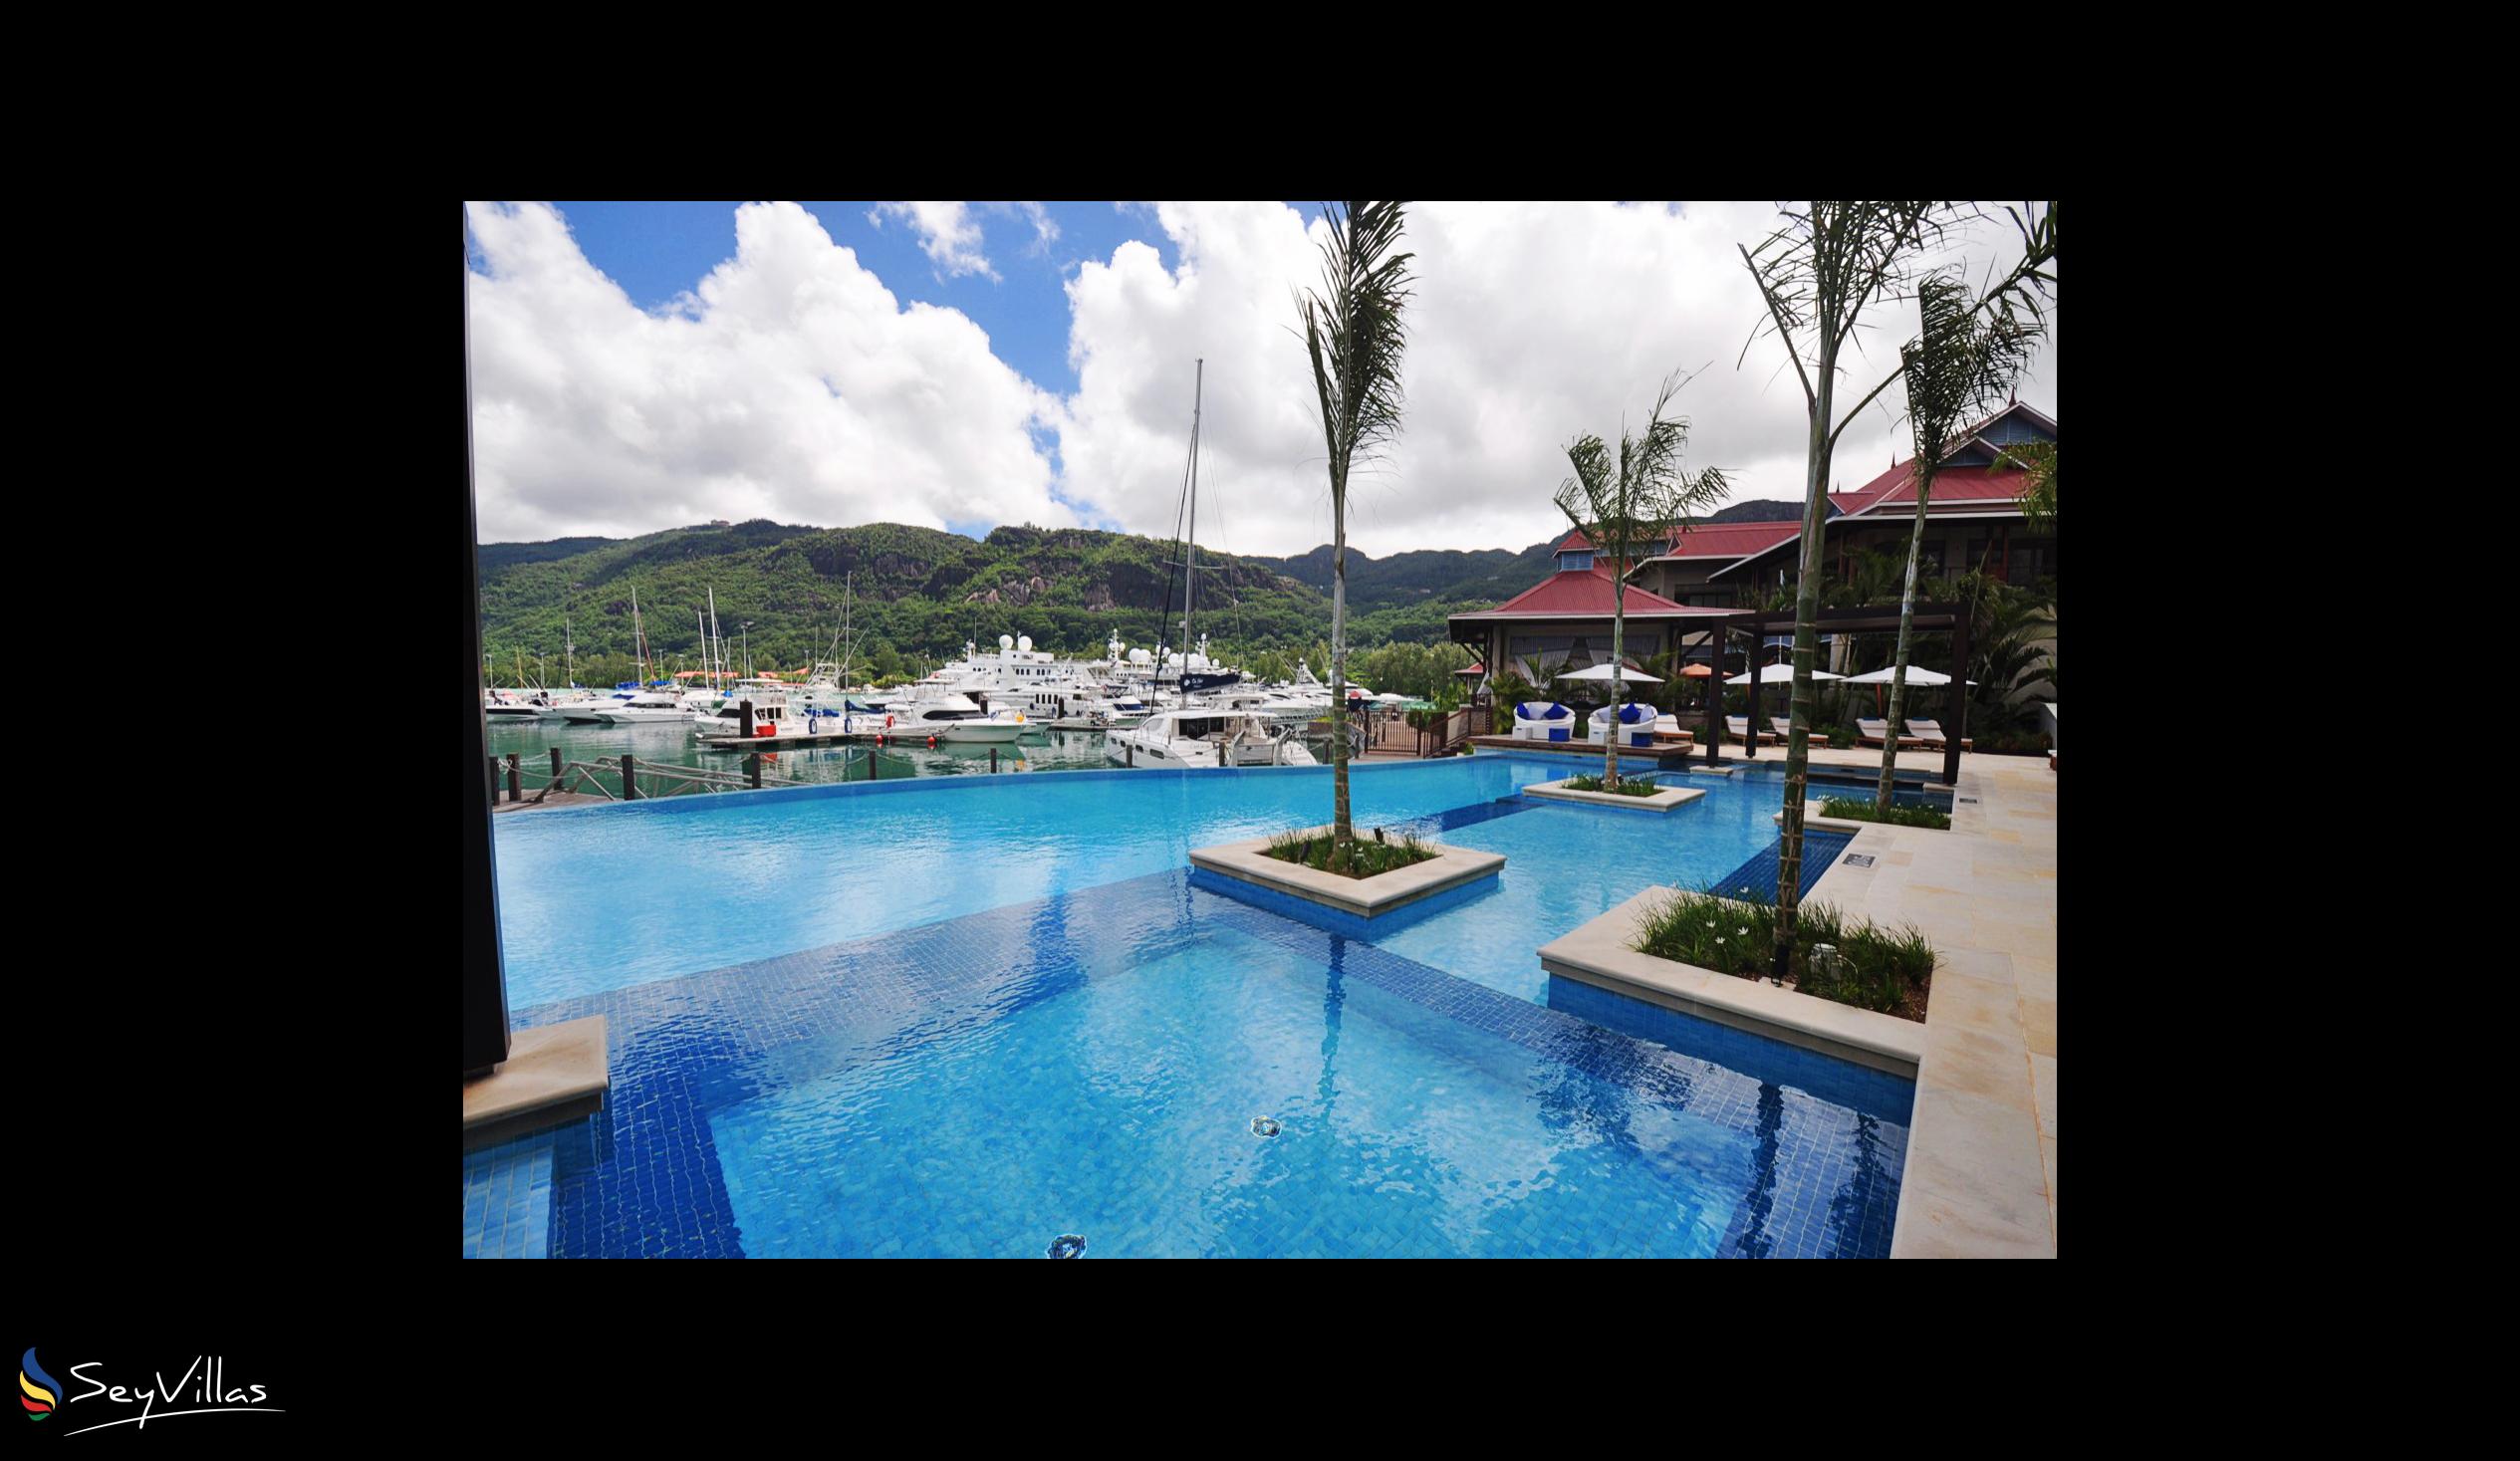 Photo 9: Eden Bleu Hotel - Outdoor area - Mahé (Seychelles)